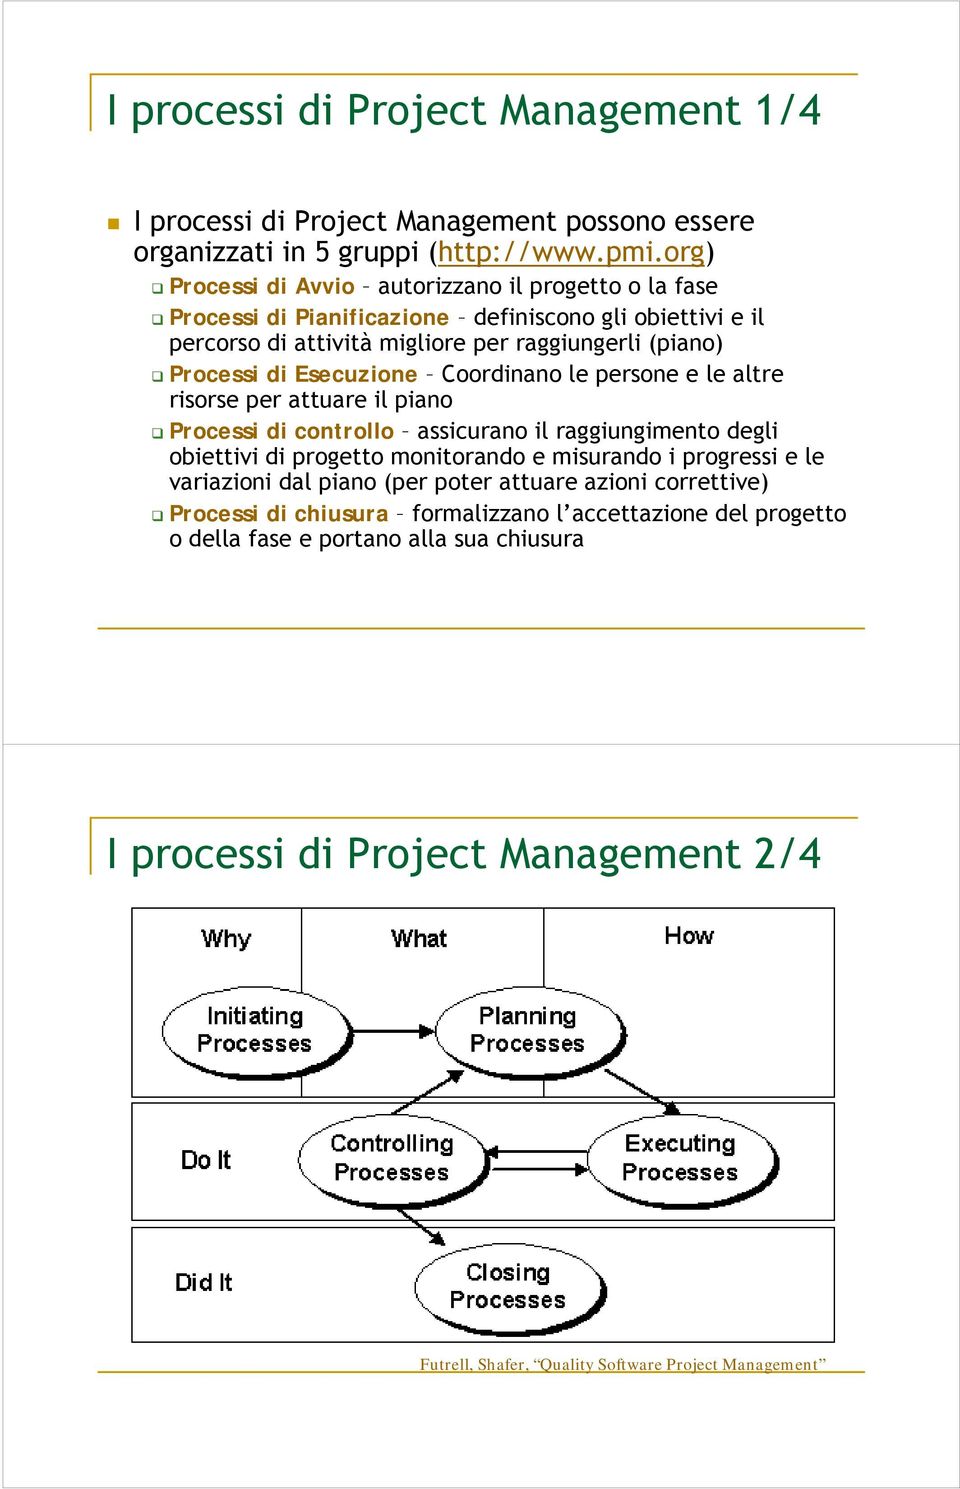 Esecuzione Coordinano le persone e le altre risorse per attuare il piano Processi di controllo assicurano il raggiungimento degli obiettivi di progetto monitorando e misurando i progressi